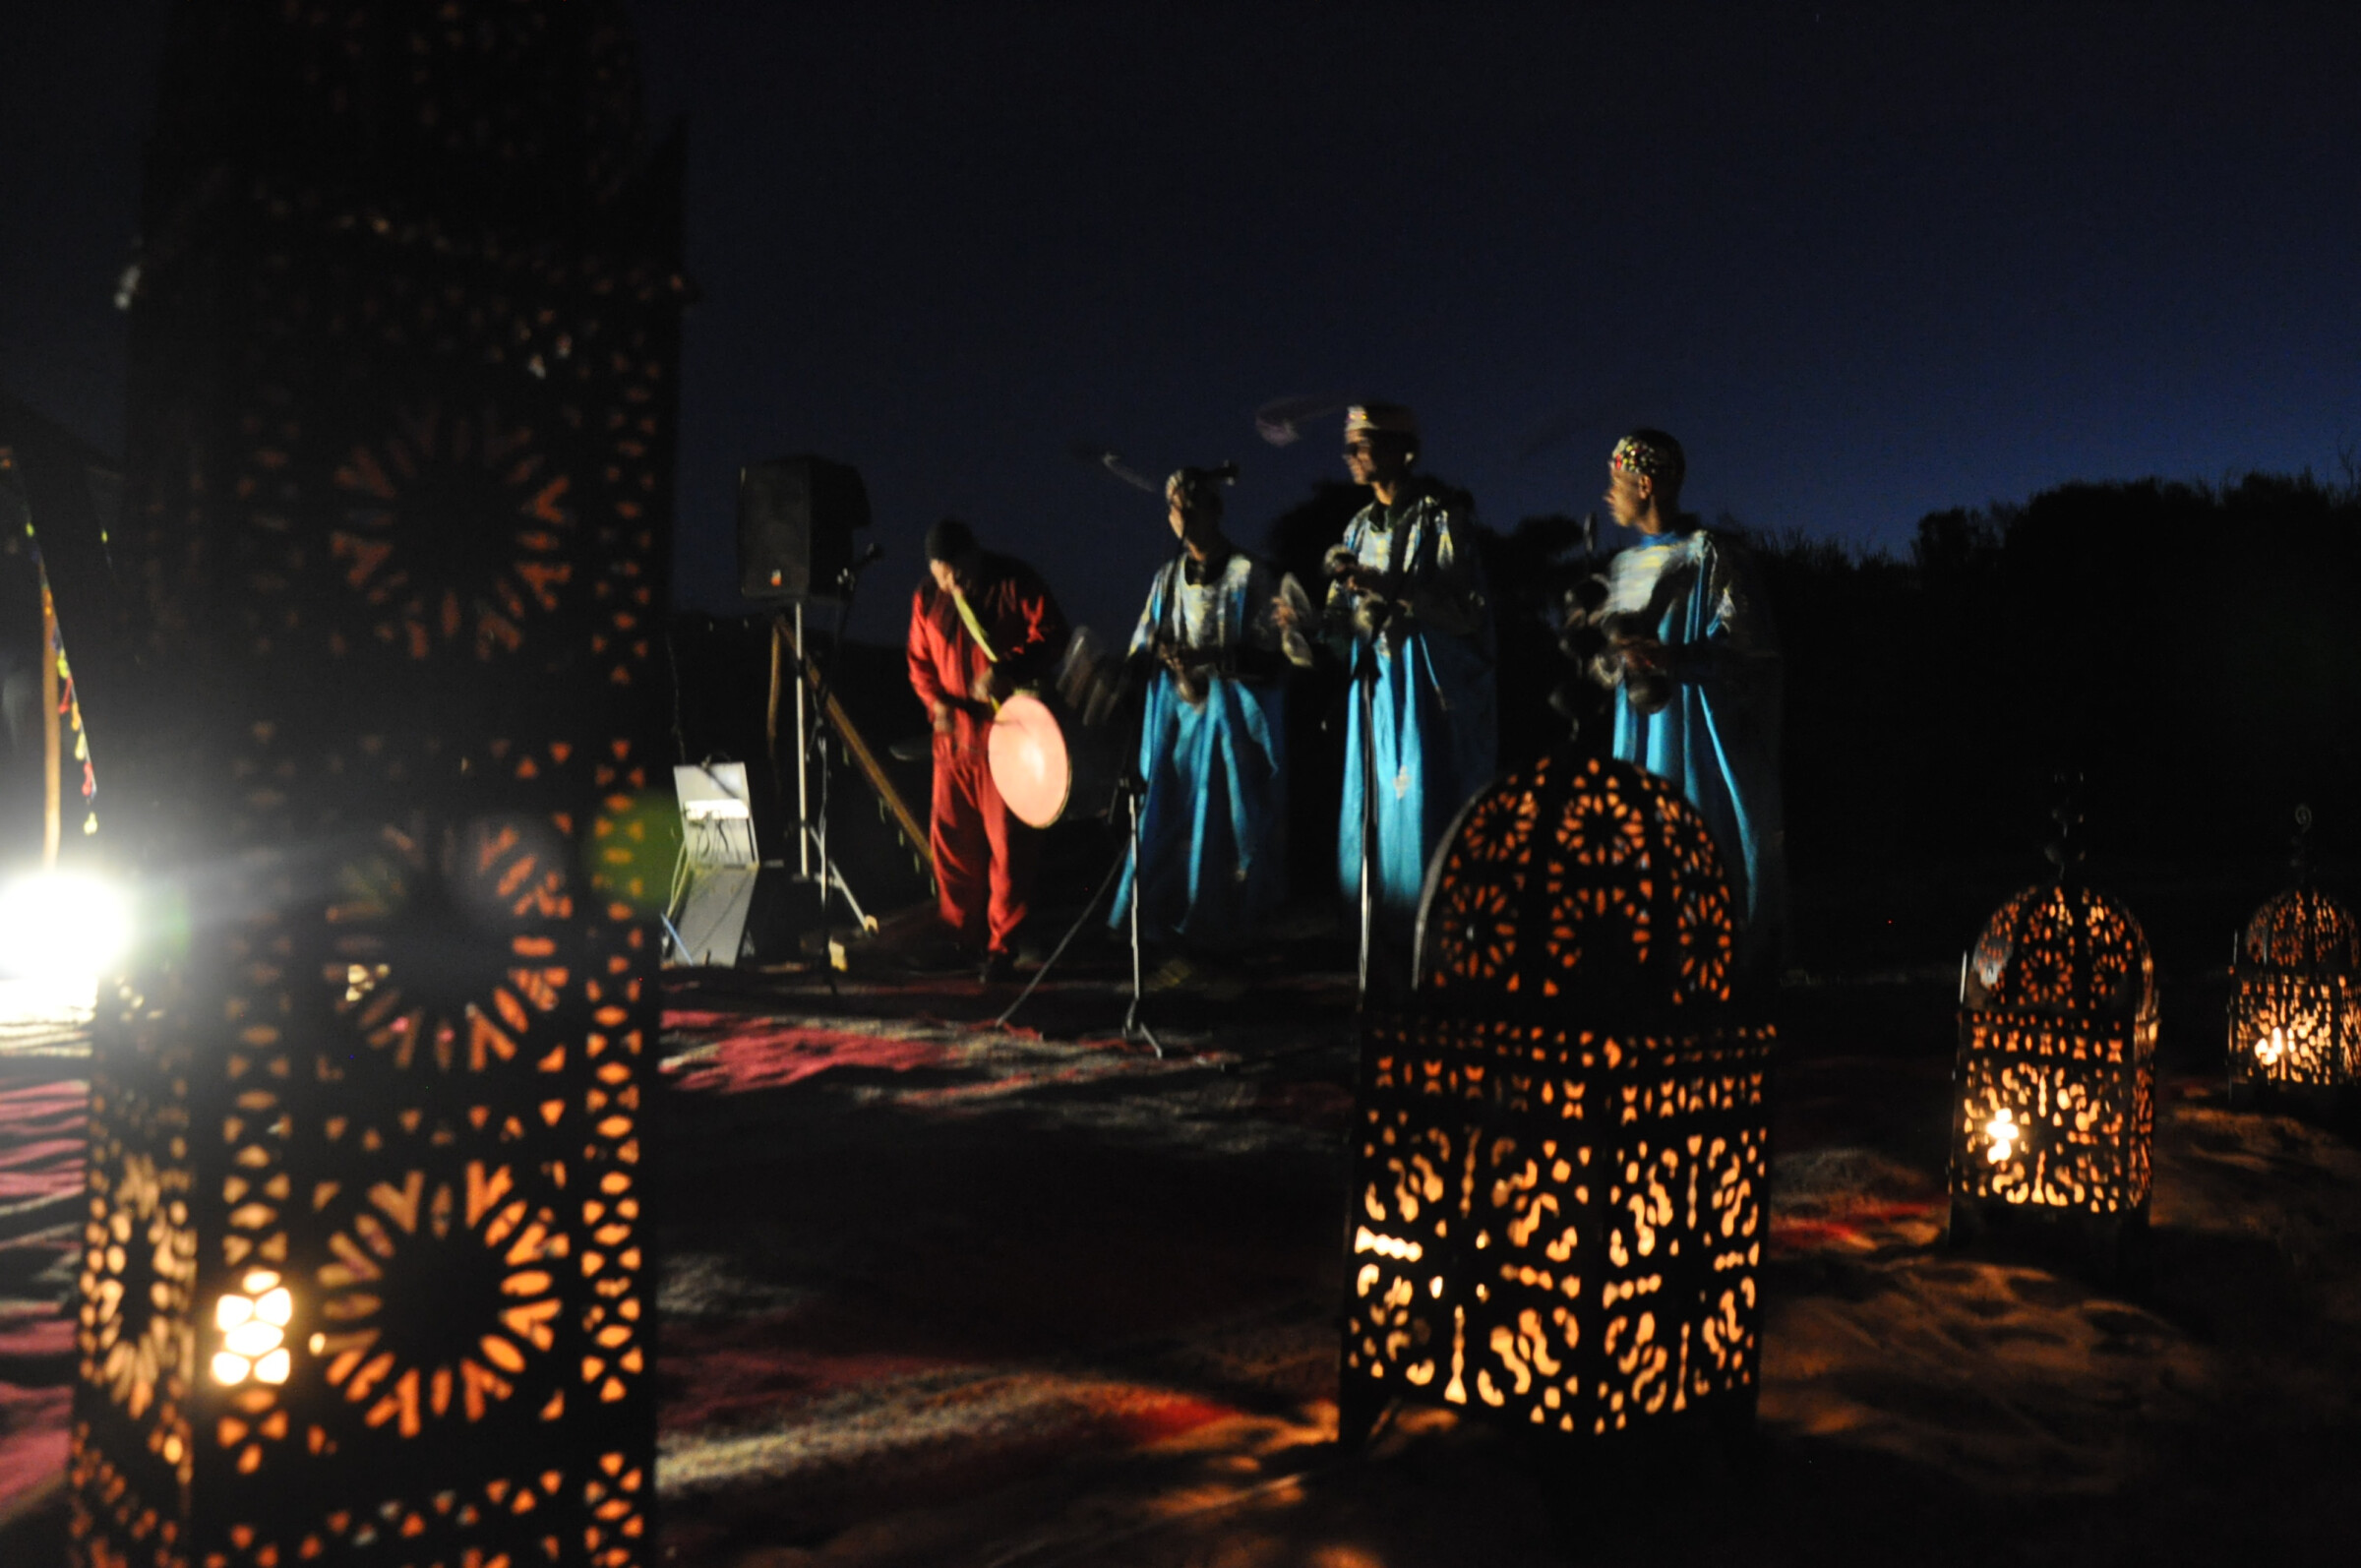 المغرب الموسيقي تحت الضوء في مهرجان “سلام” بفيينا